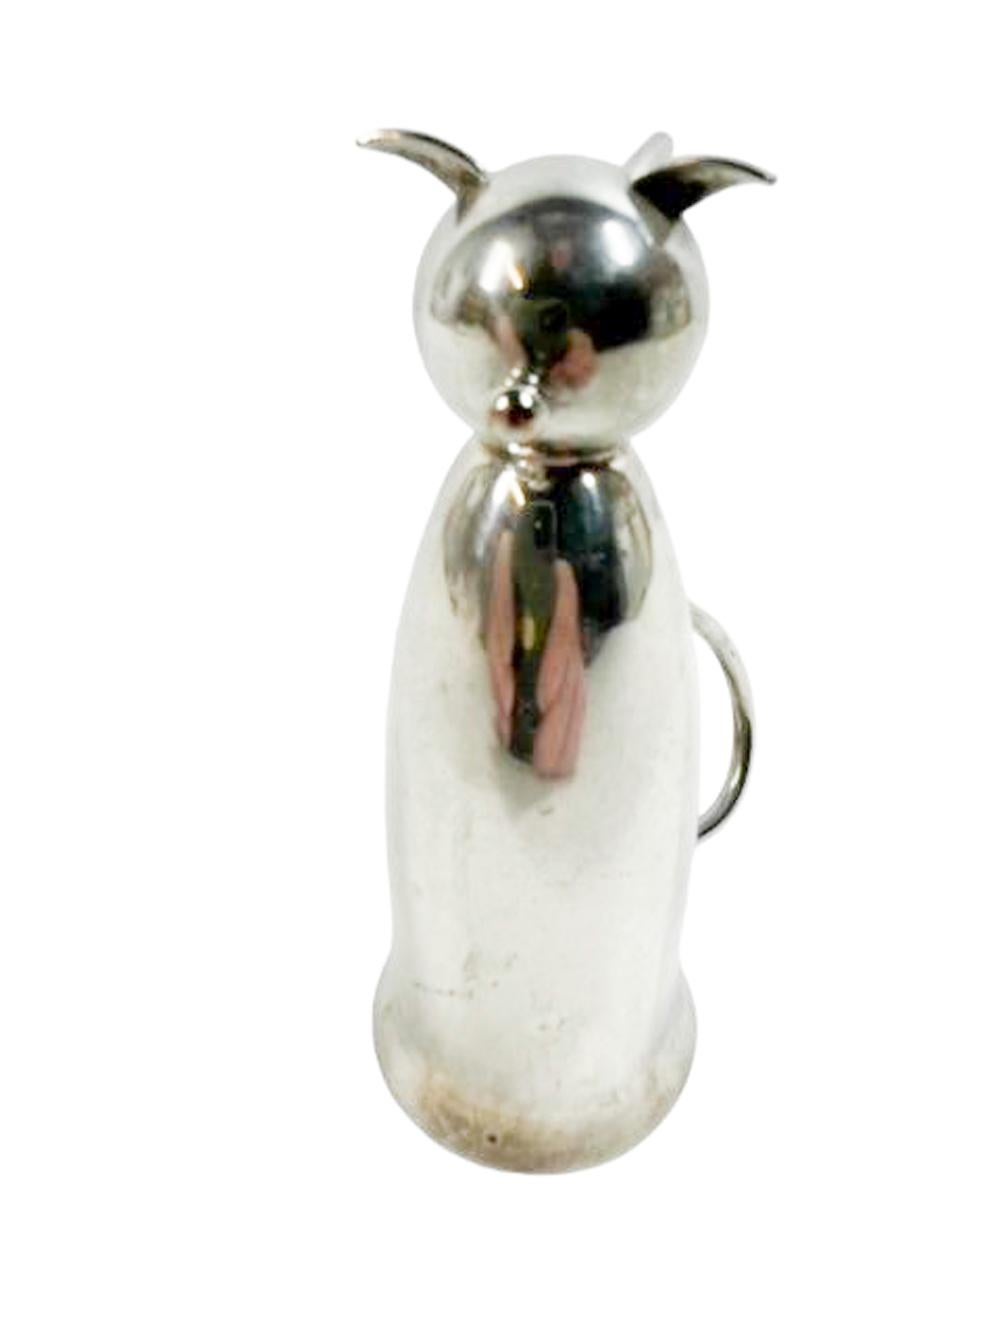 Mesure à alcool ou jigger de 1 oz en forme d'étrier Art Déco en métal argenté, représentant un chat assis, dont les oreilles et la queue font office de pieds lorsqu'on le retourne pour l'utiliser.